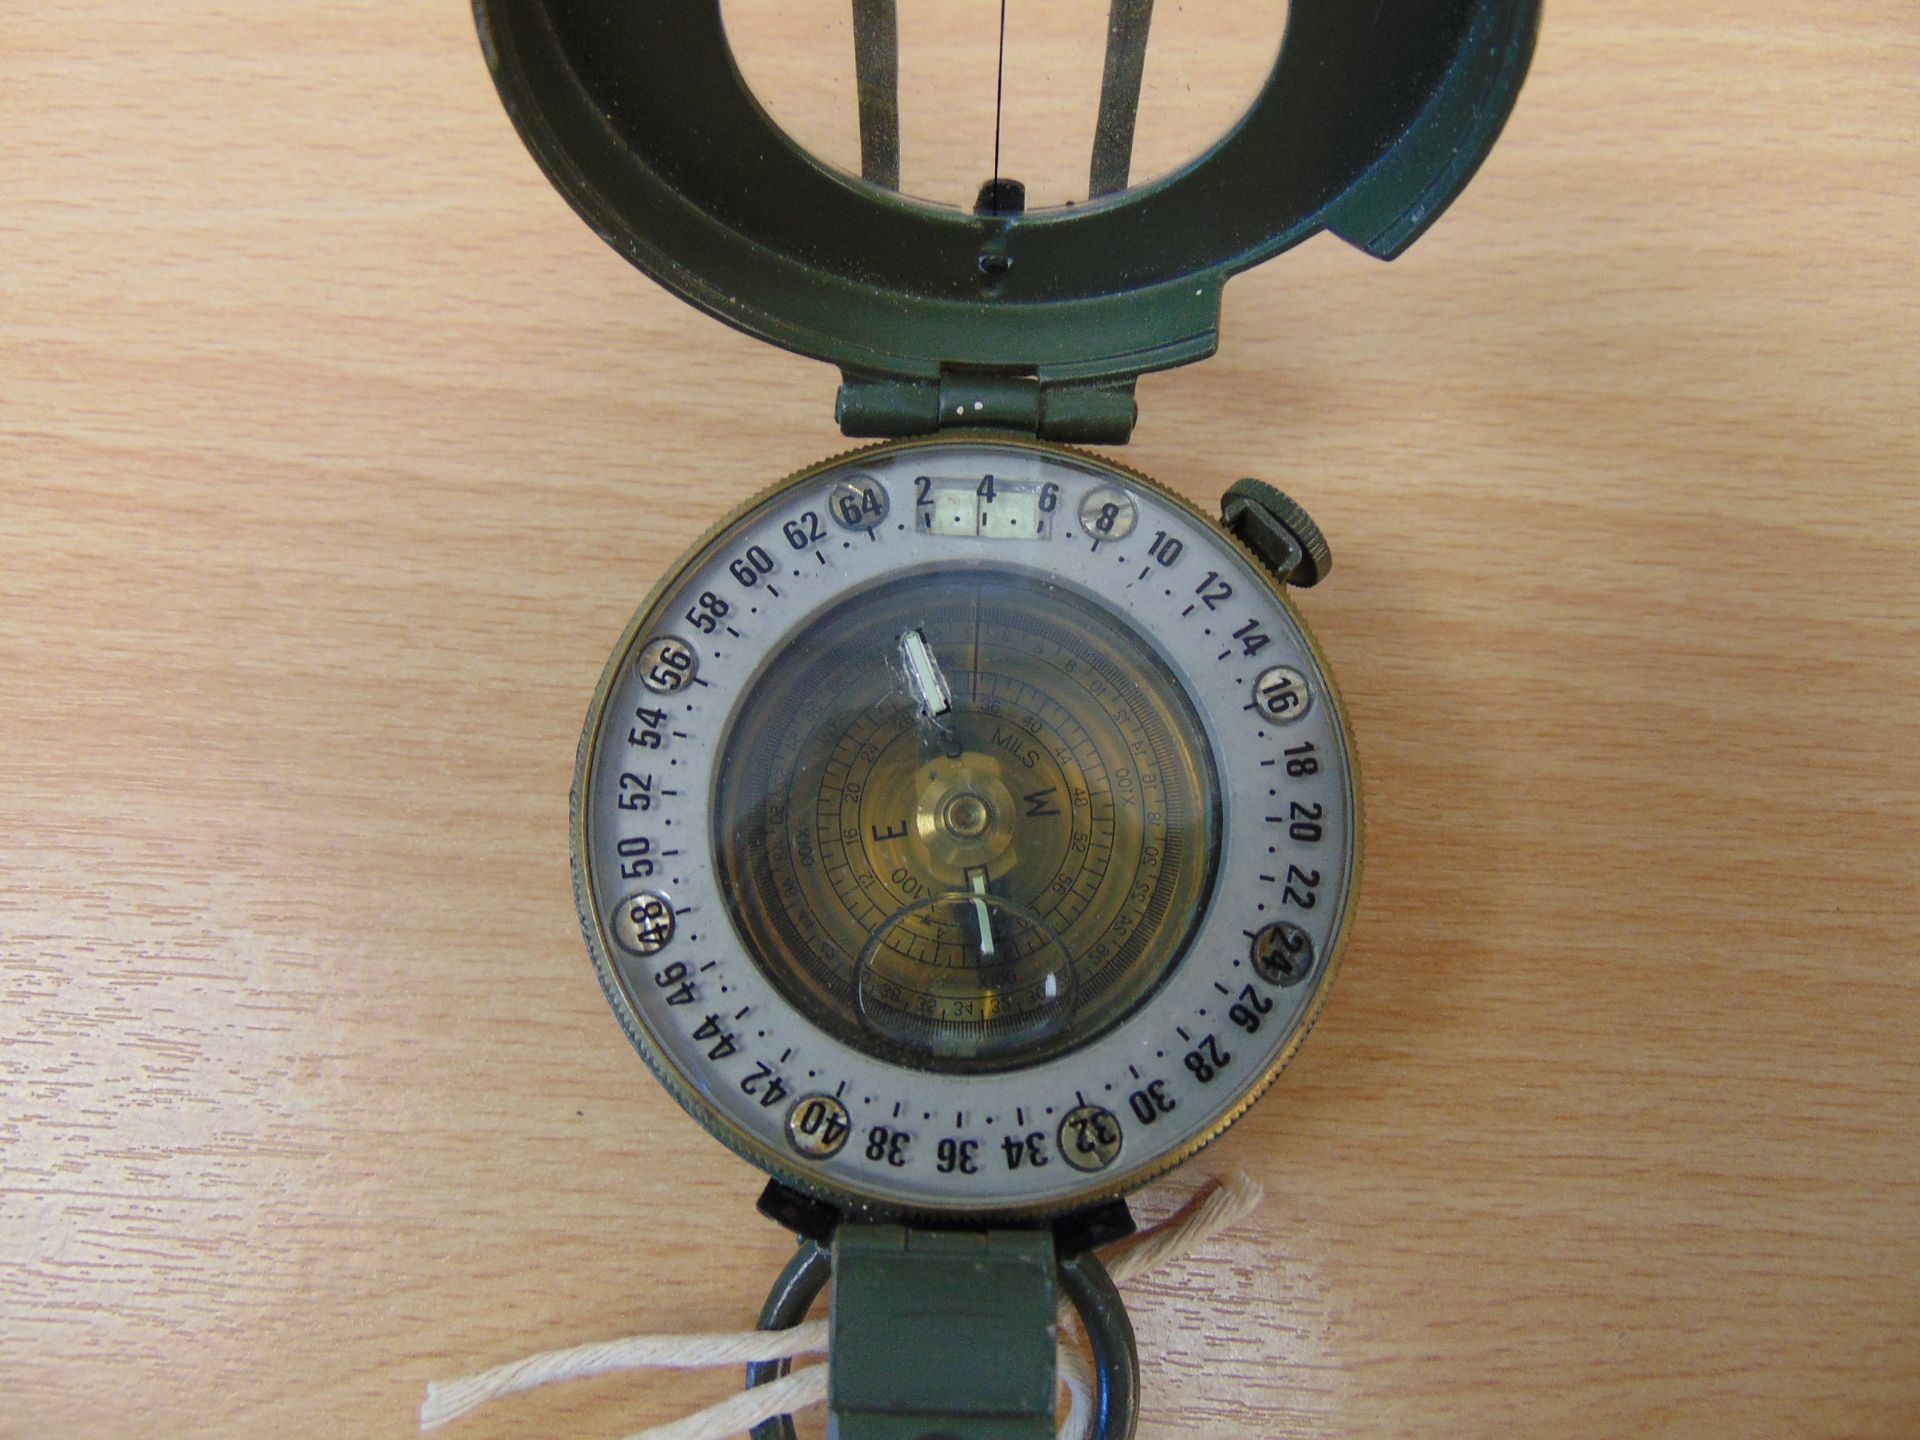 Stanley London British Army Prismatic Compass in mils, Nato marks - Bild 2 aus 4